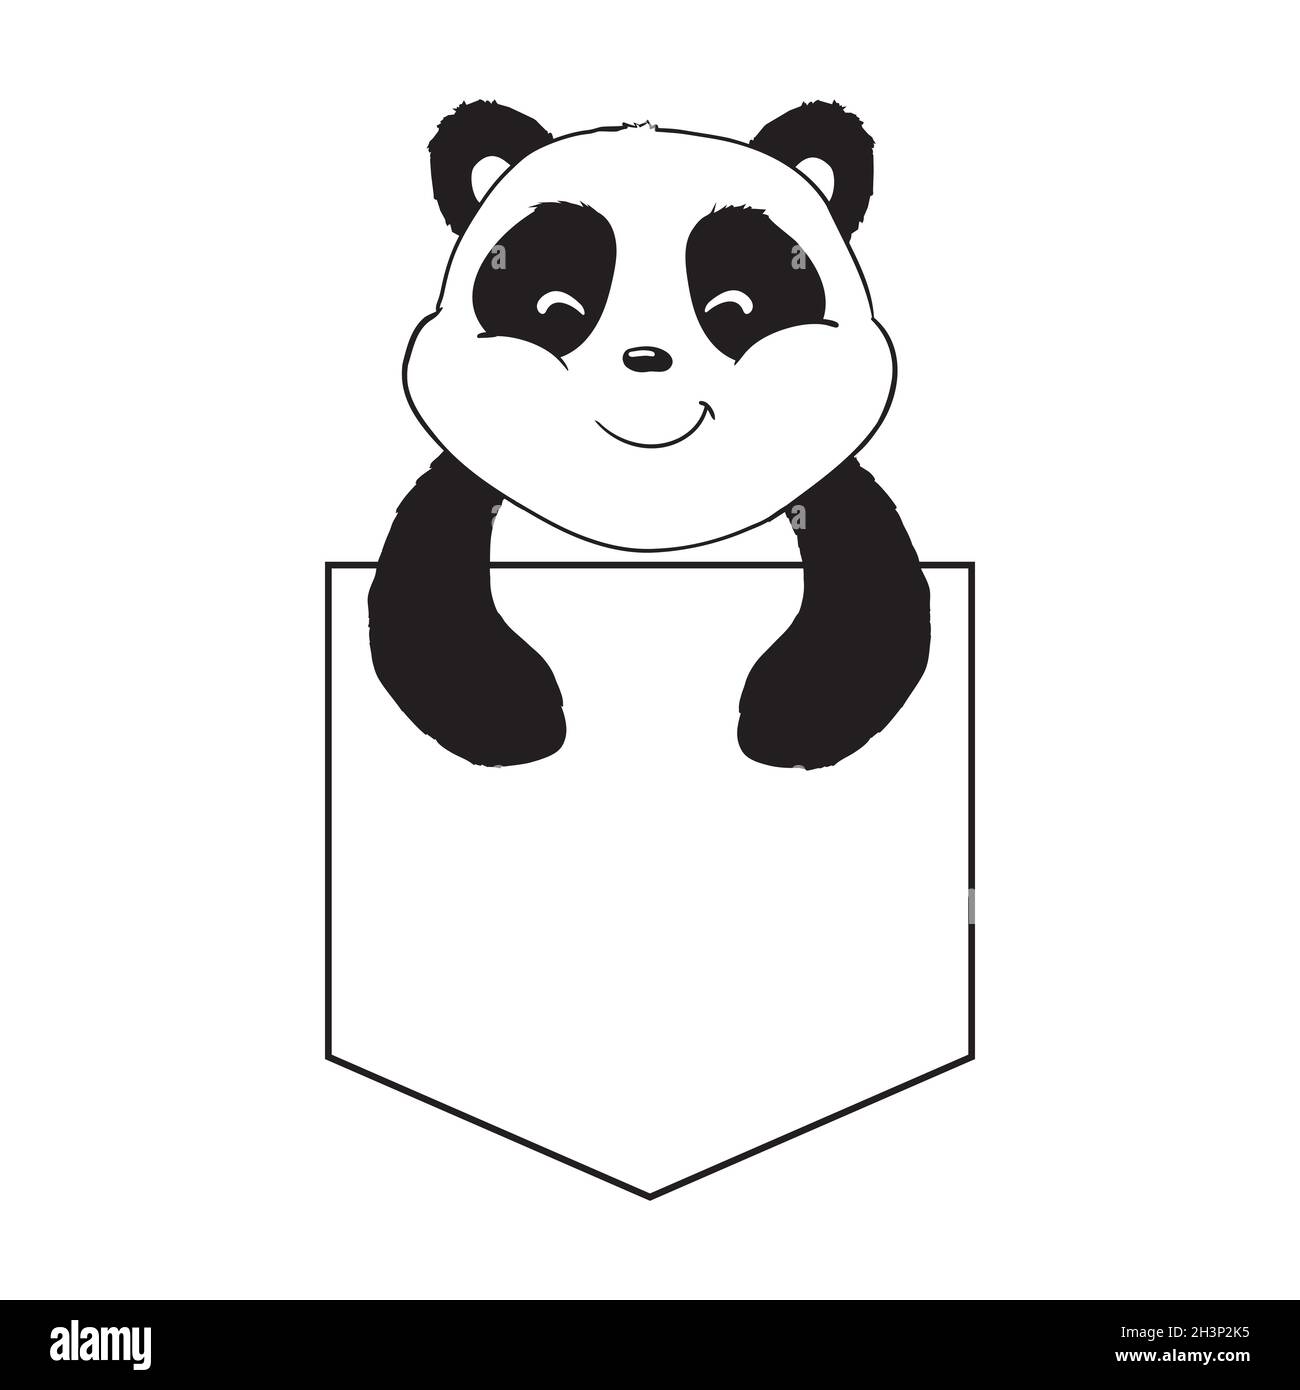 How to Draw a Cute Panda Easy - video Dailymotion-saigonsouth.com.vn